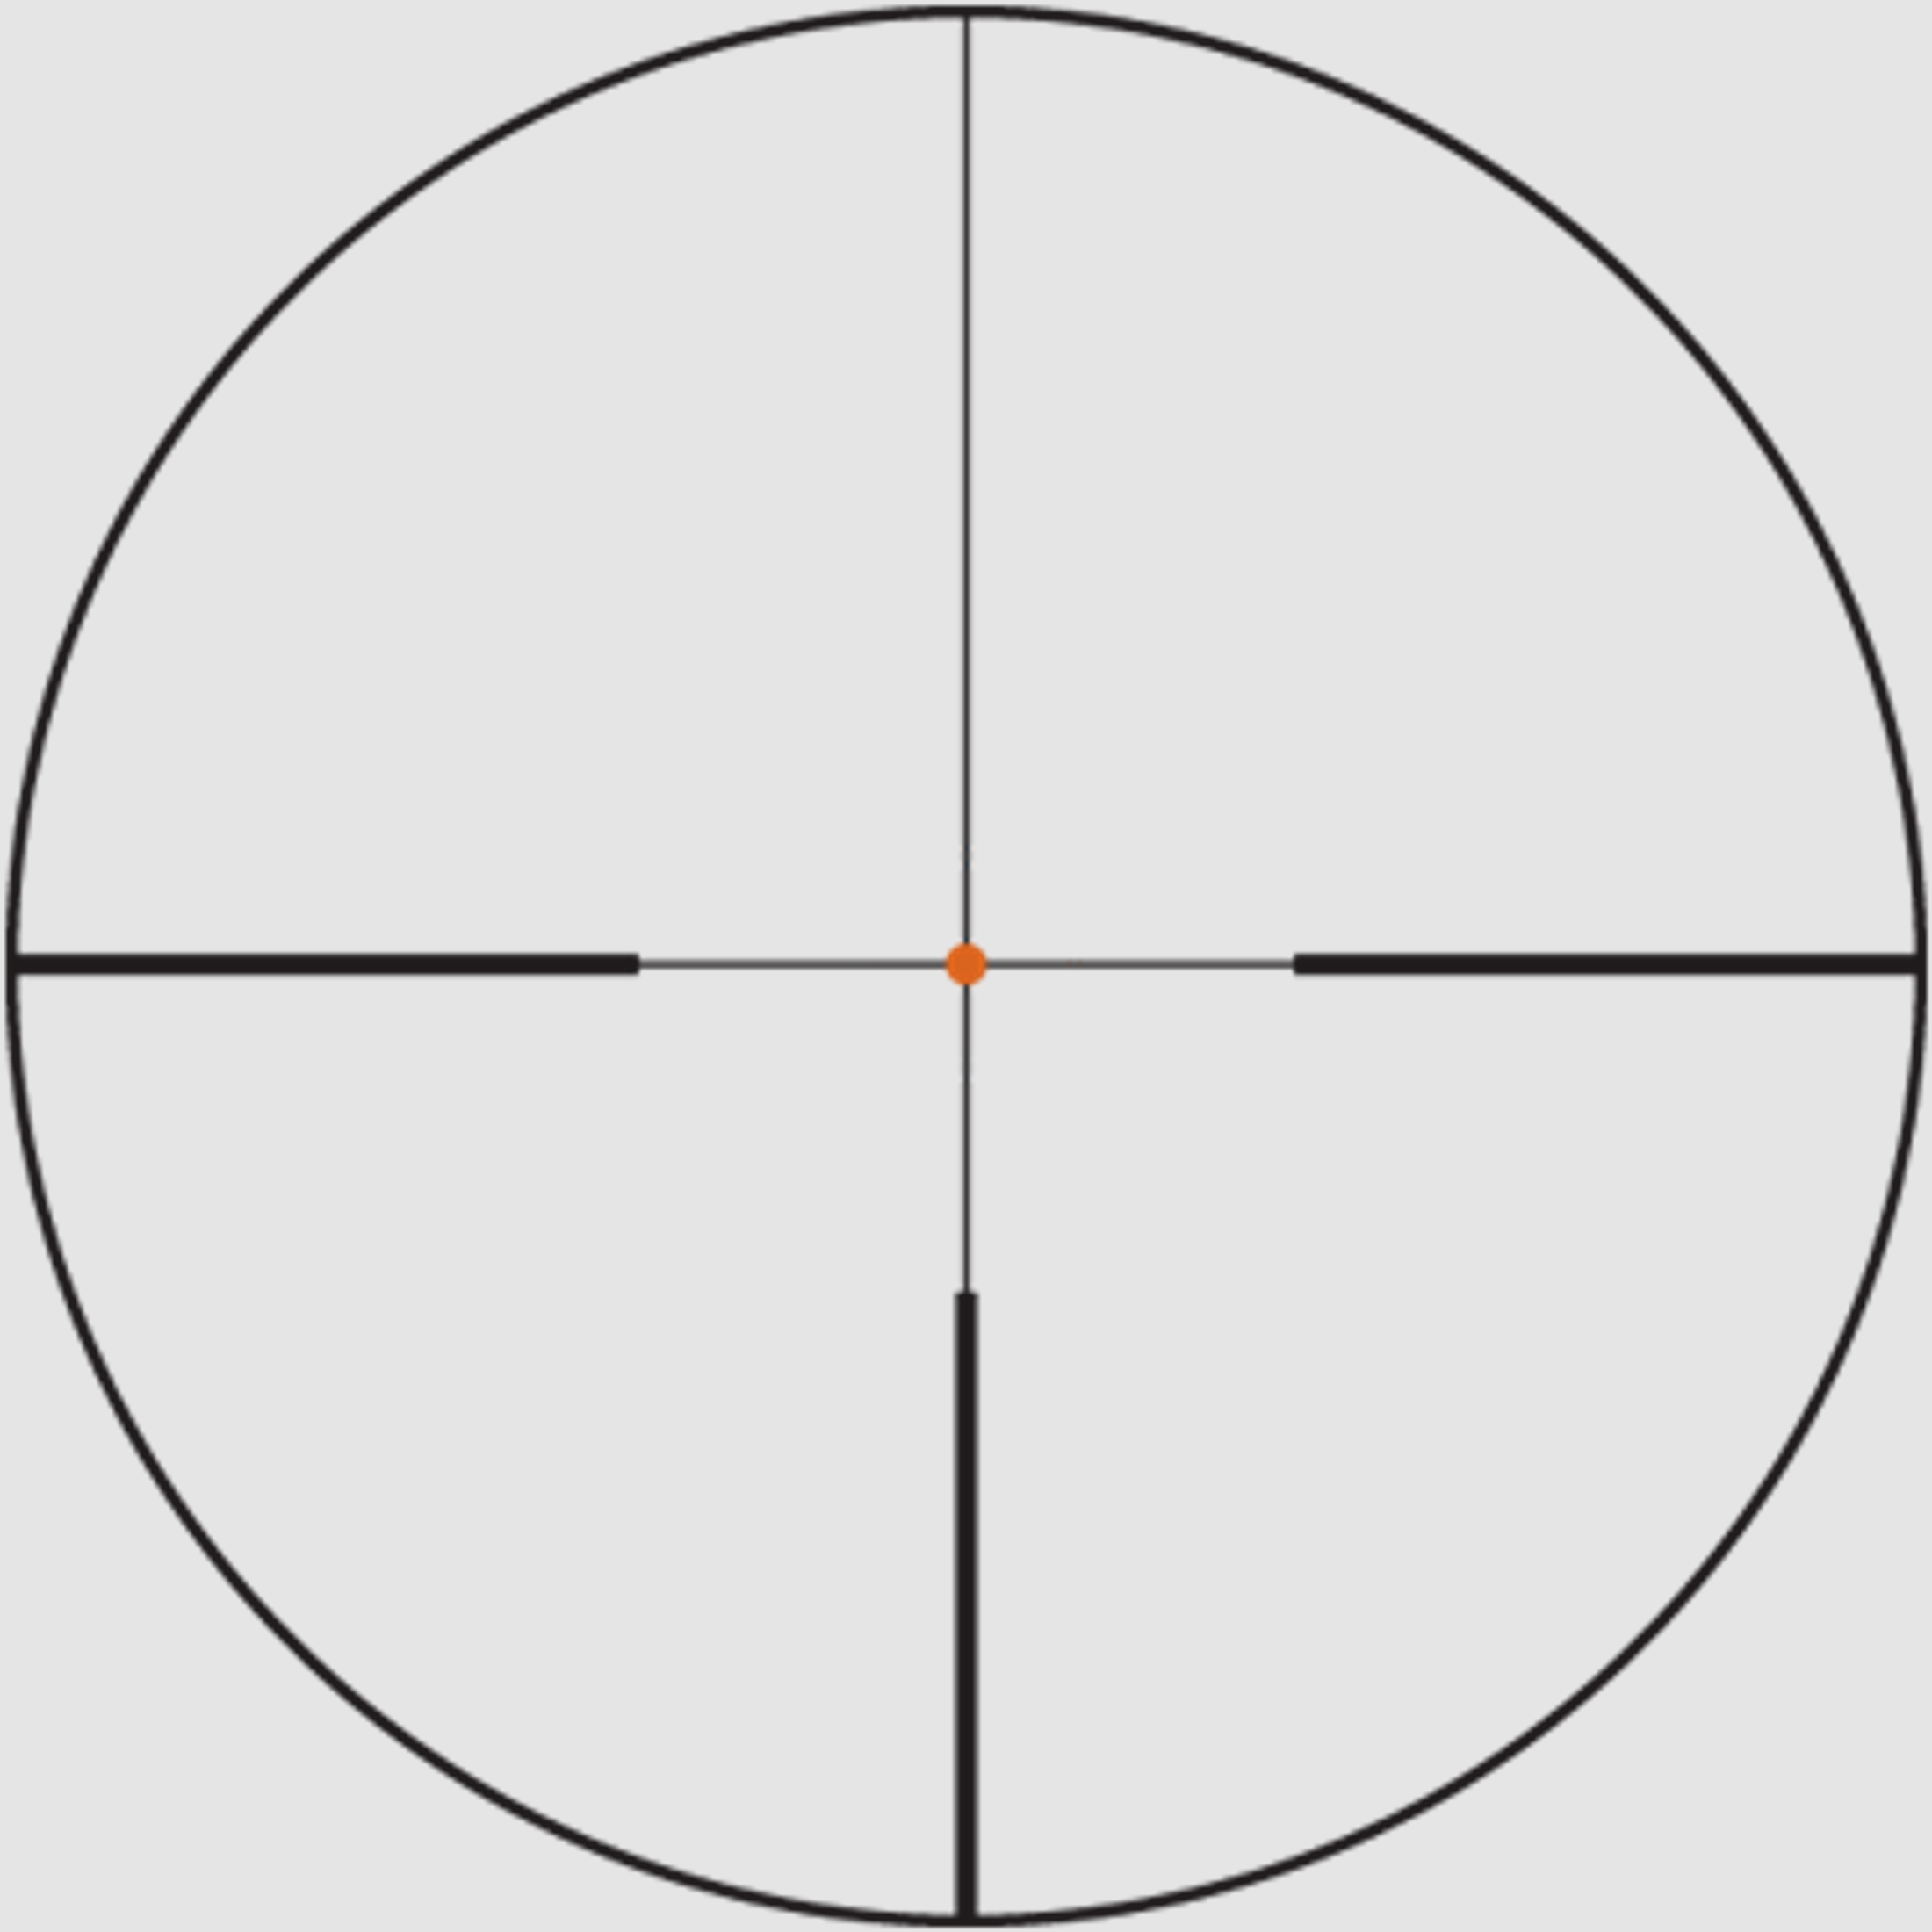 SWAROVSKI Zielfernrohr mit Leuchtabsehen 1,7-13,3x42 P Z8i SR Abs. 4A-IF FLEXCHANGE